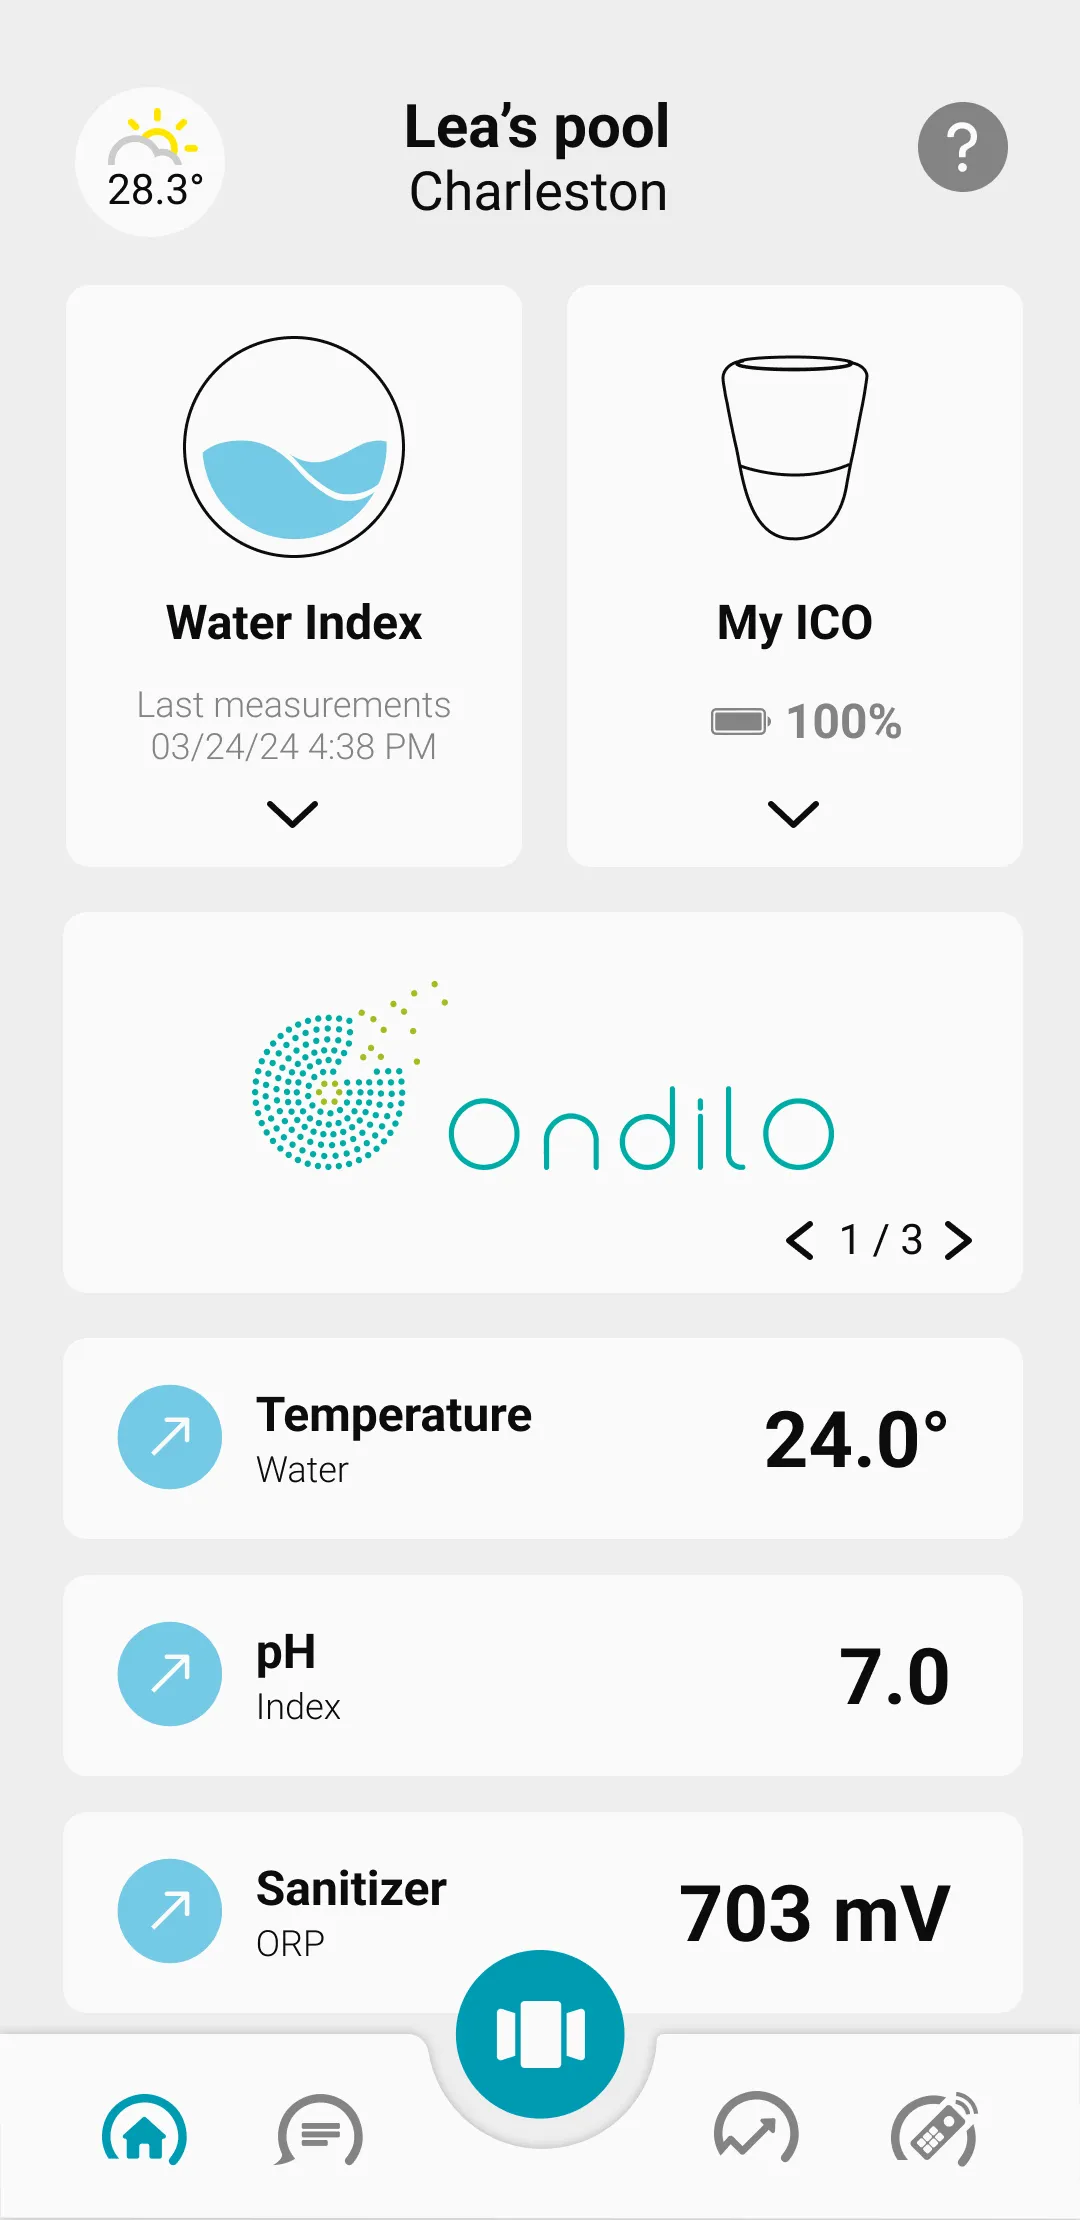 L’application d’Ondilo est intuitive et facile à utiliser pour les utilisateurs possédant ICO